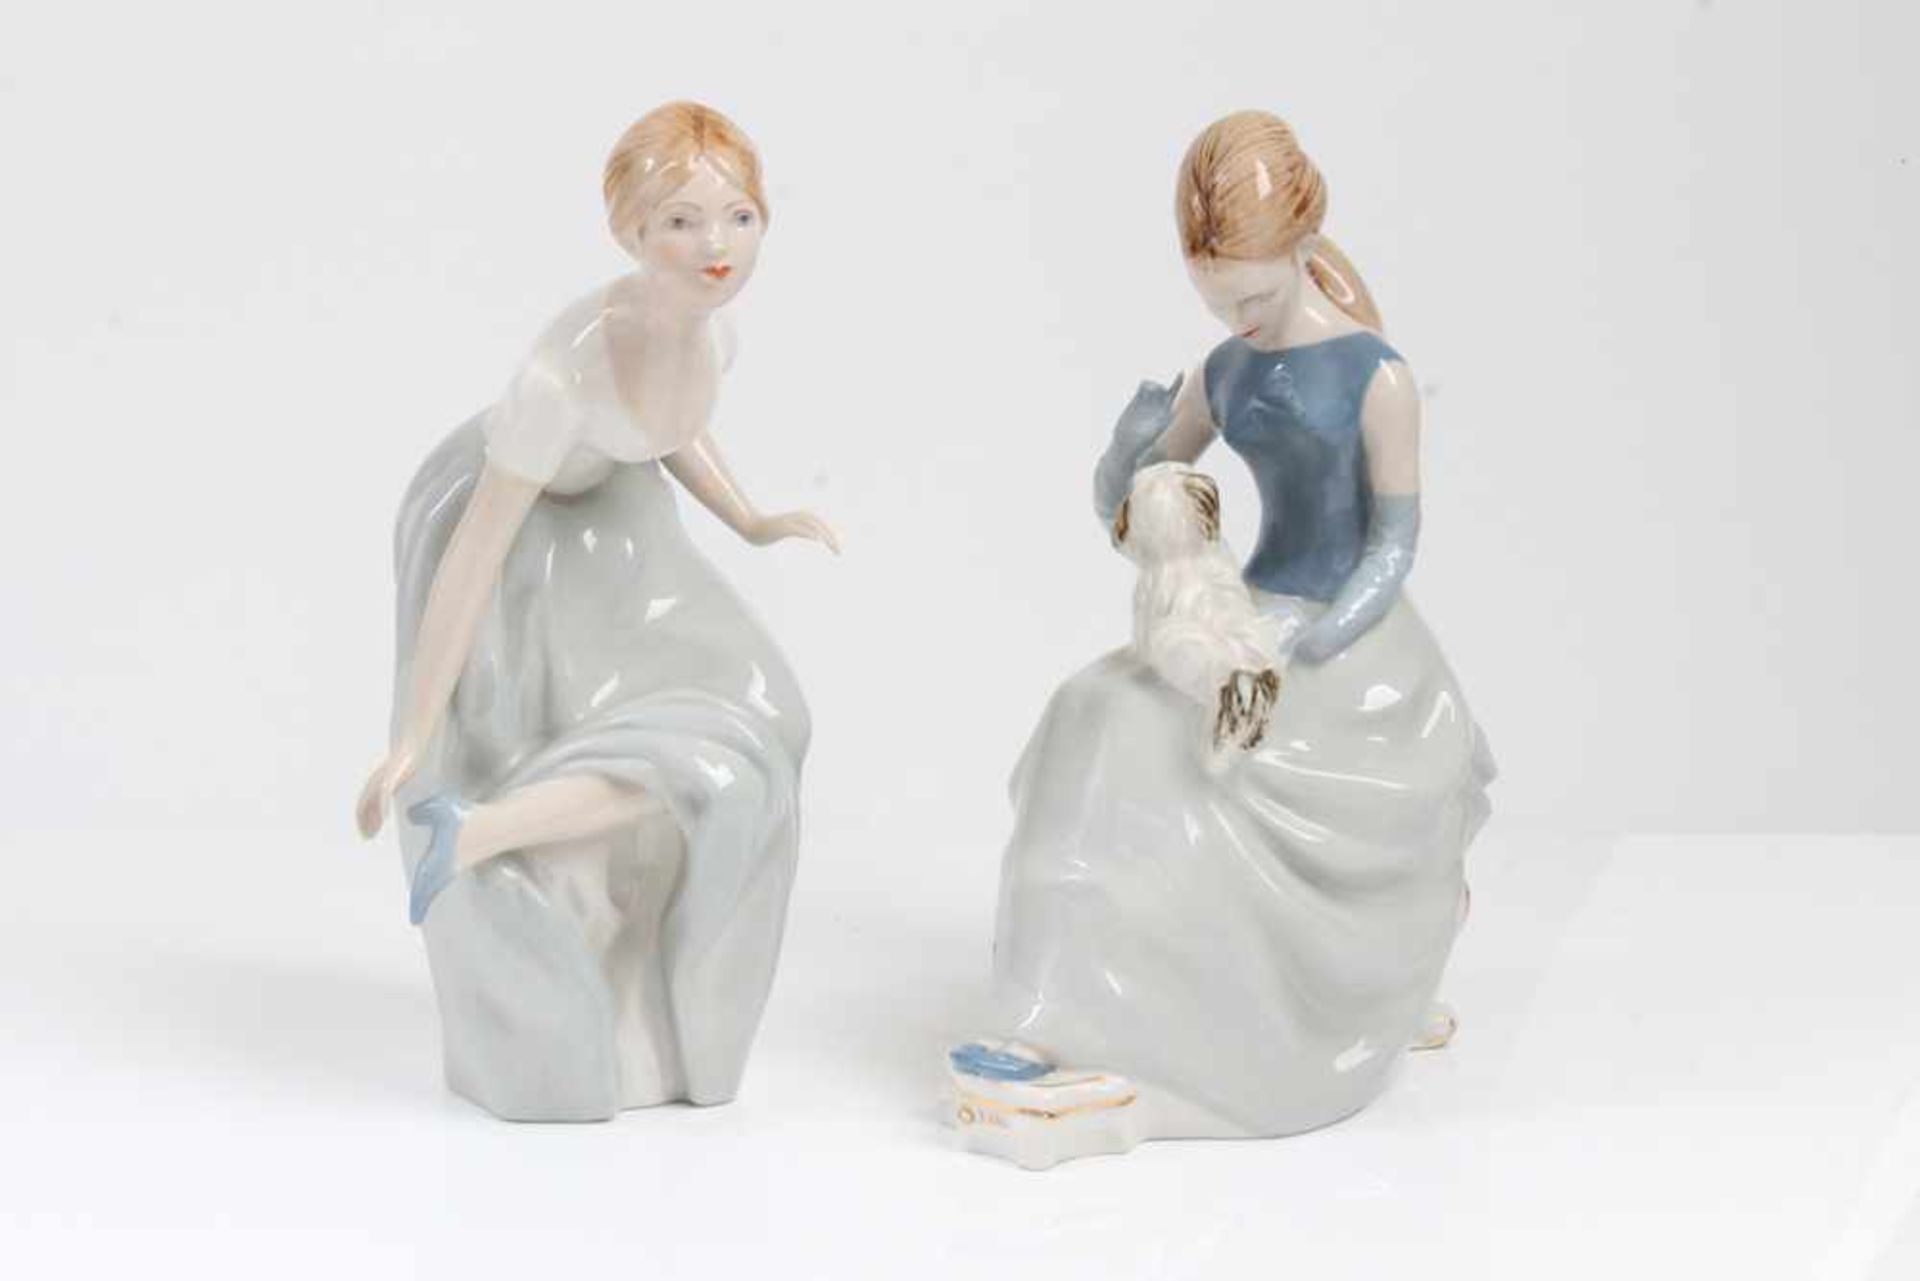 Zwei Porzellanfiguren.Royal Dux 20. Jh. Sitzende und stehende Figur in in pastelligen Kleidern.